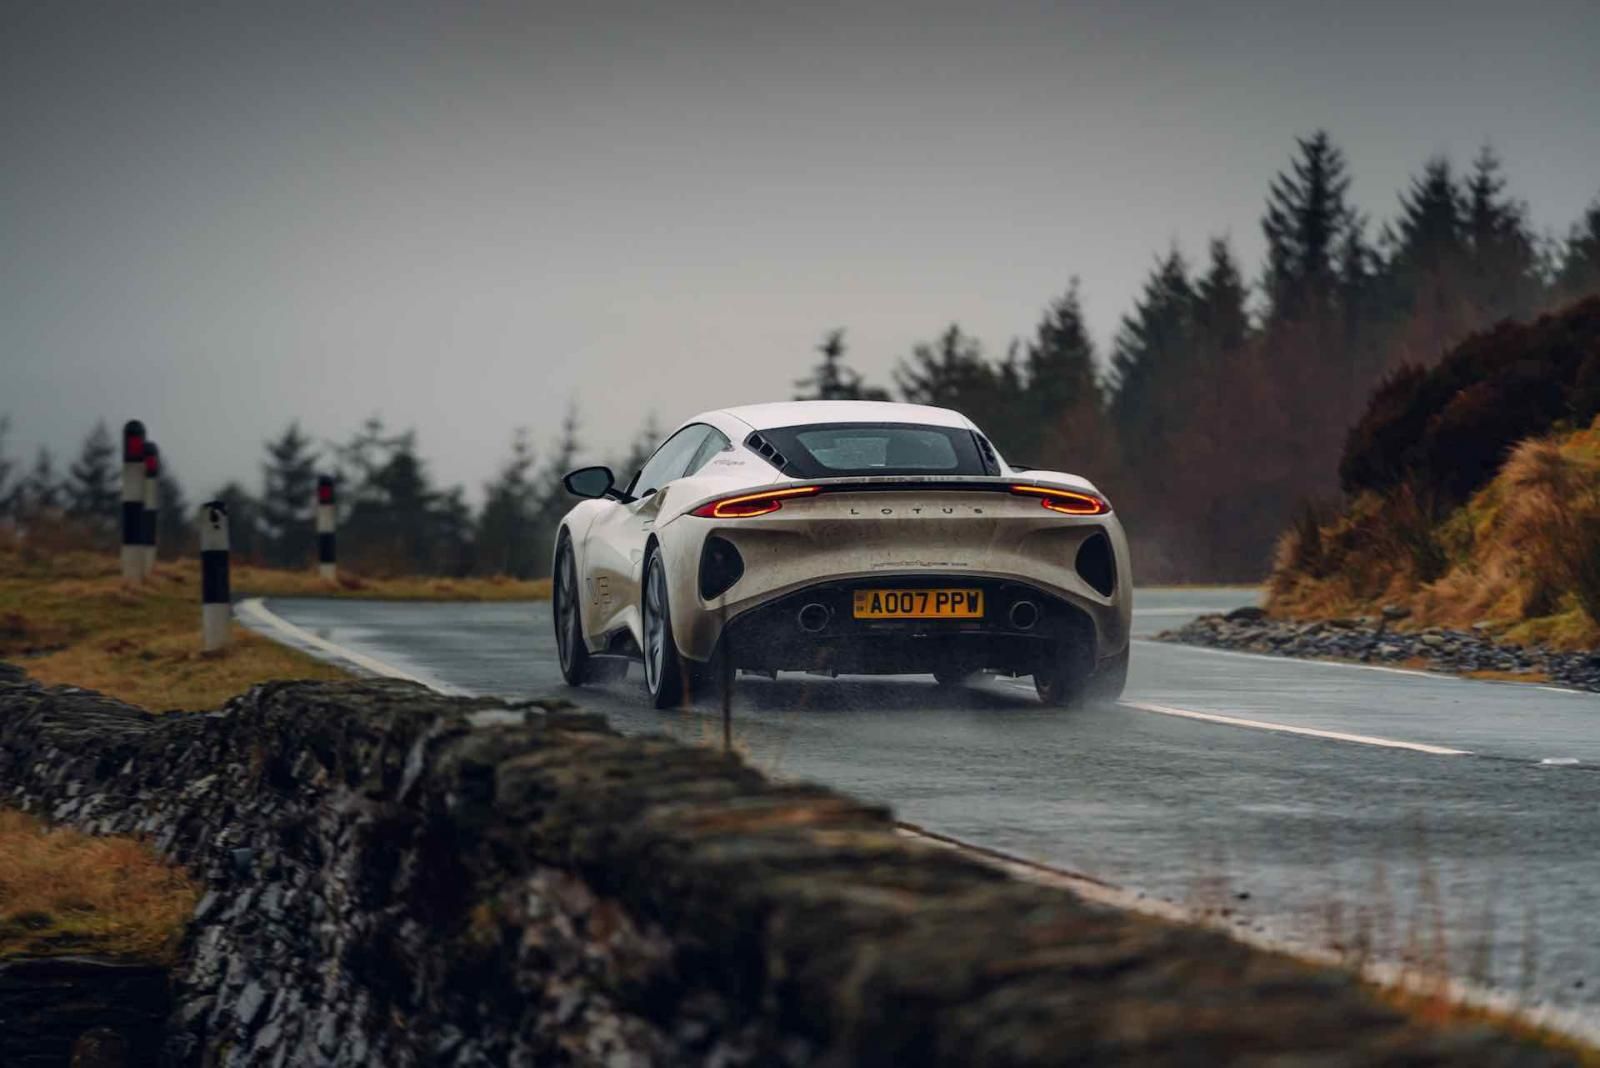 Top Gear prueba al límite el Aston Martin Vulcan